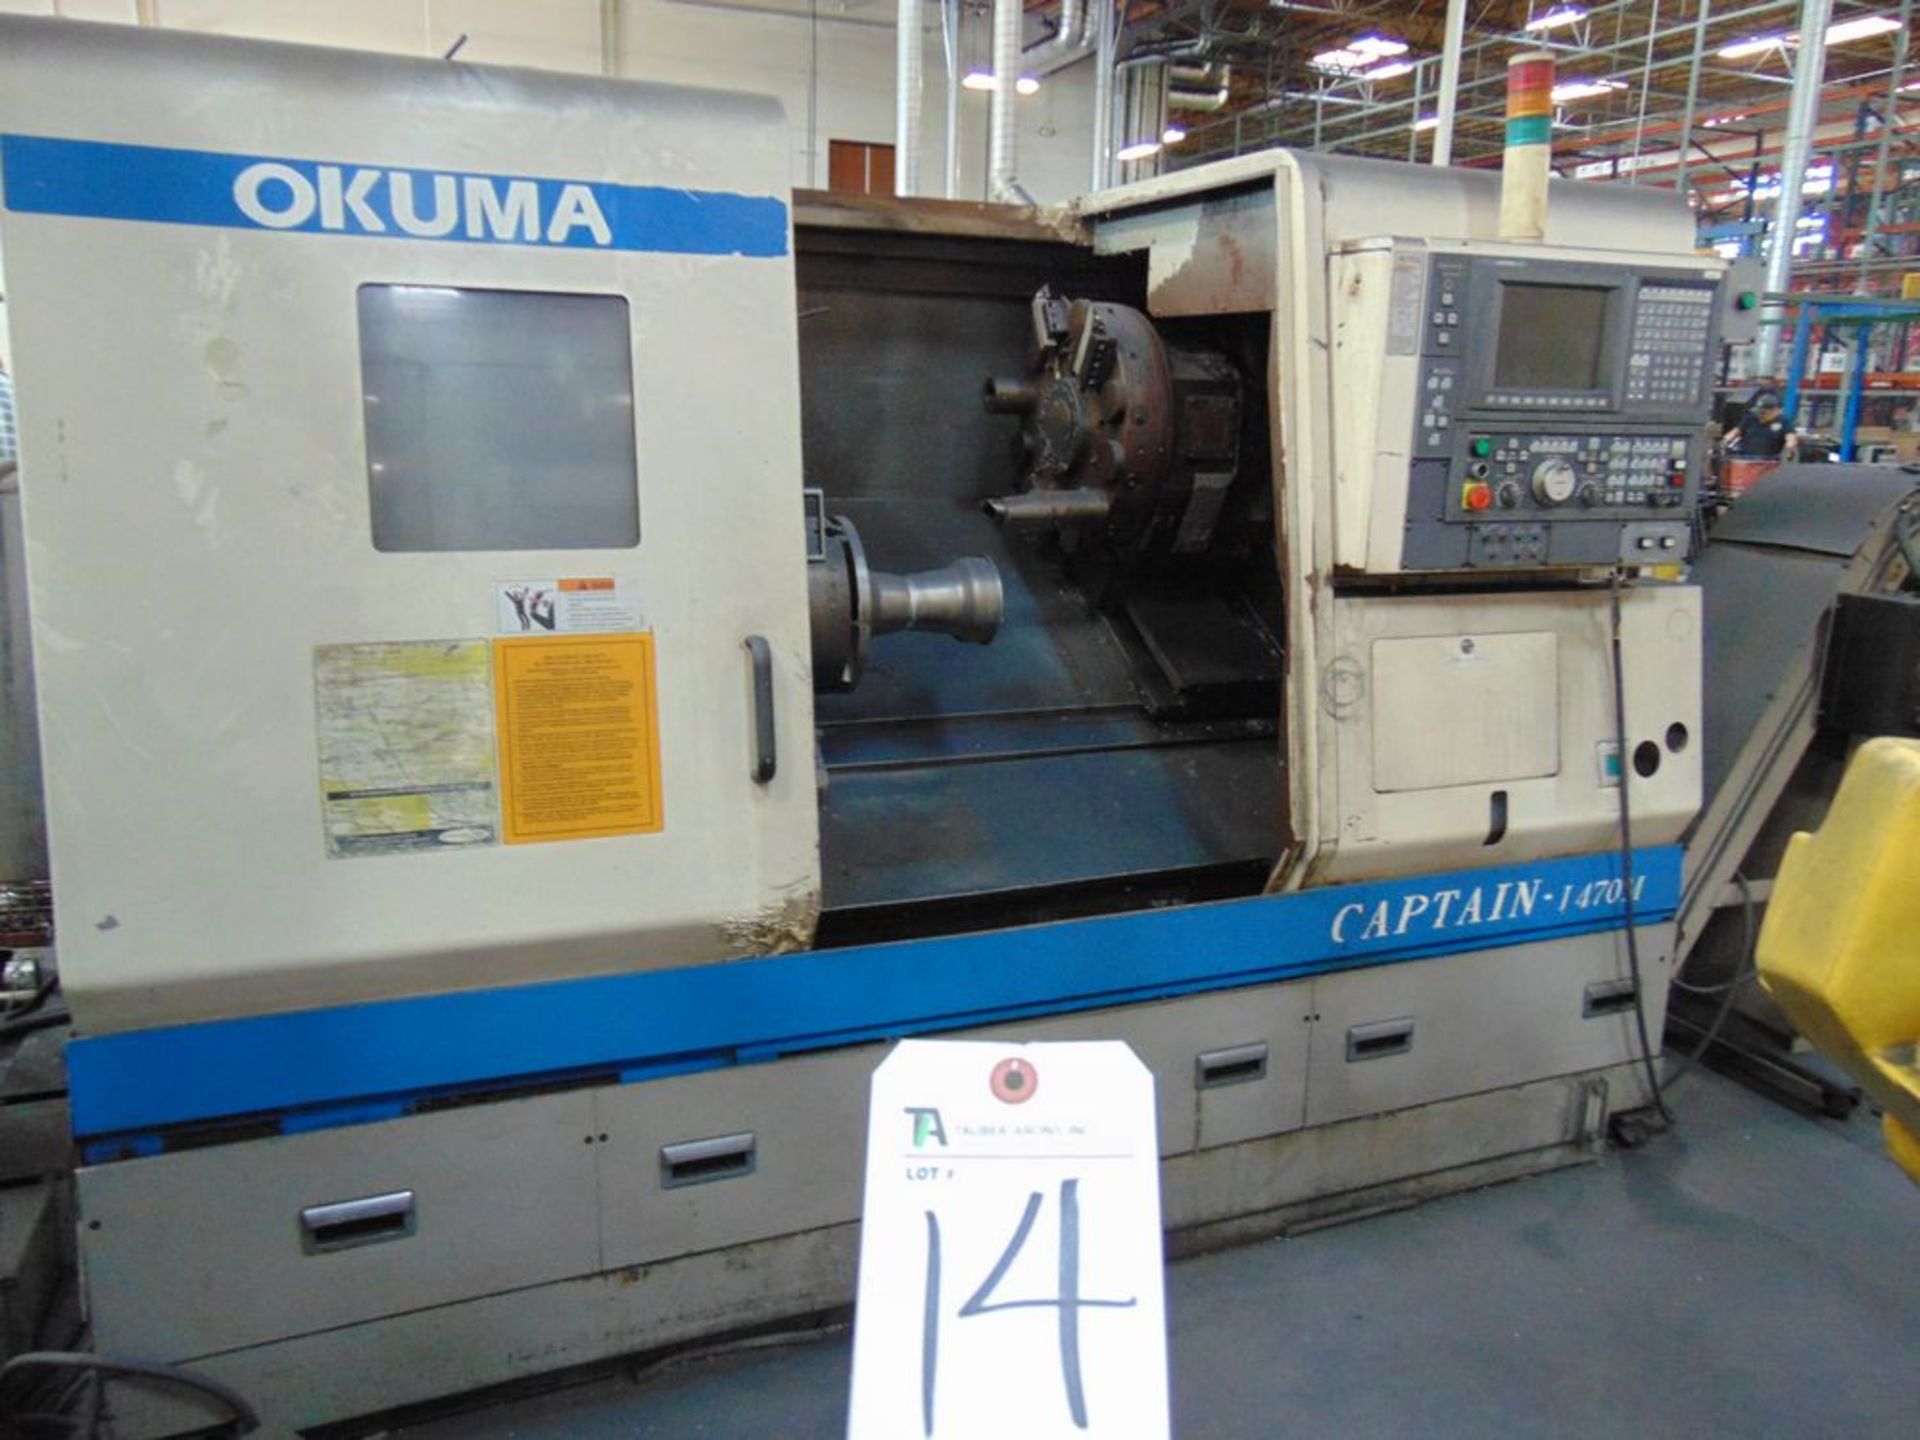 (2002) Okuma mod. L470 Captain Type LB400-M CNC Turning Center w/ Okuma OSP-E100L Controls, 12-